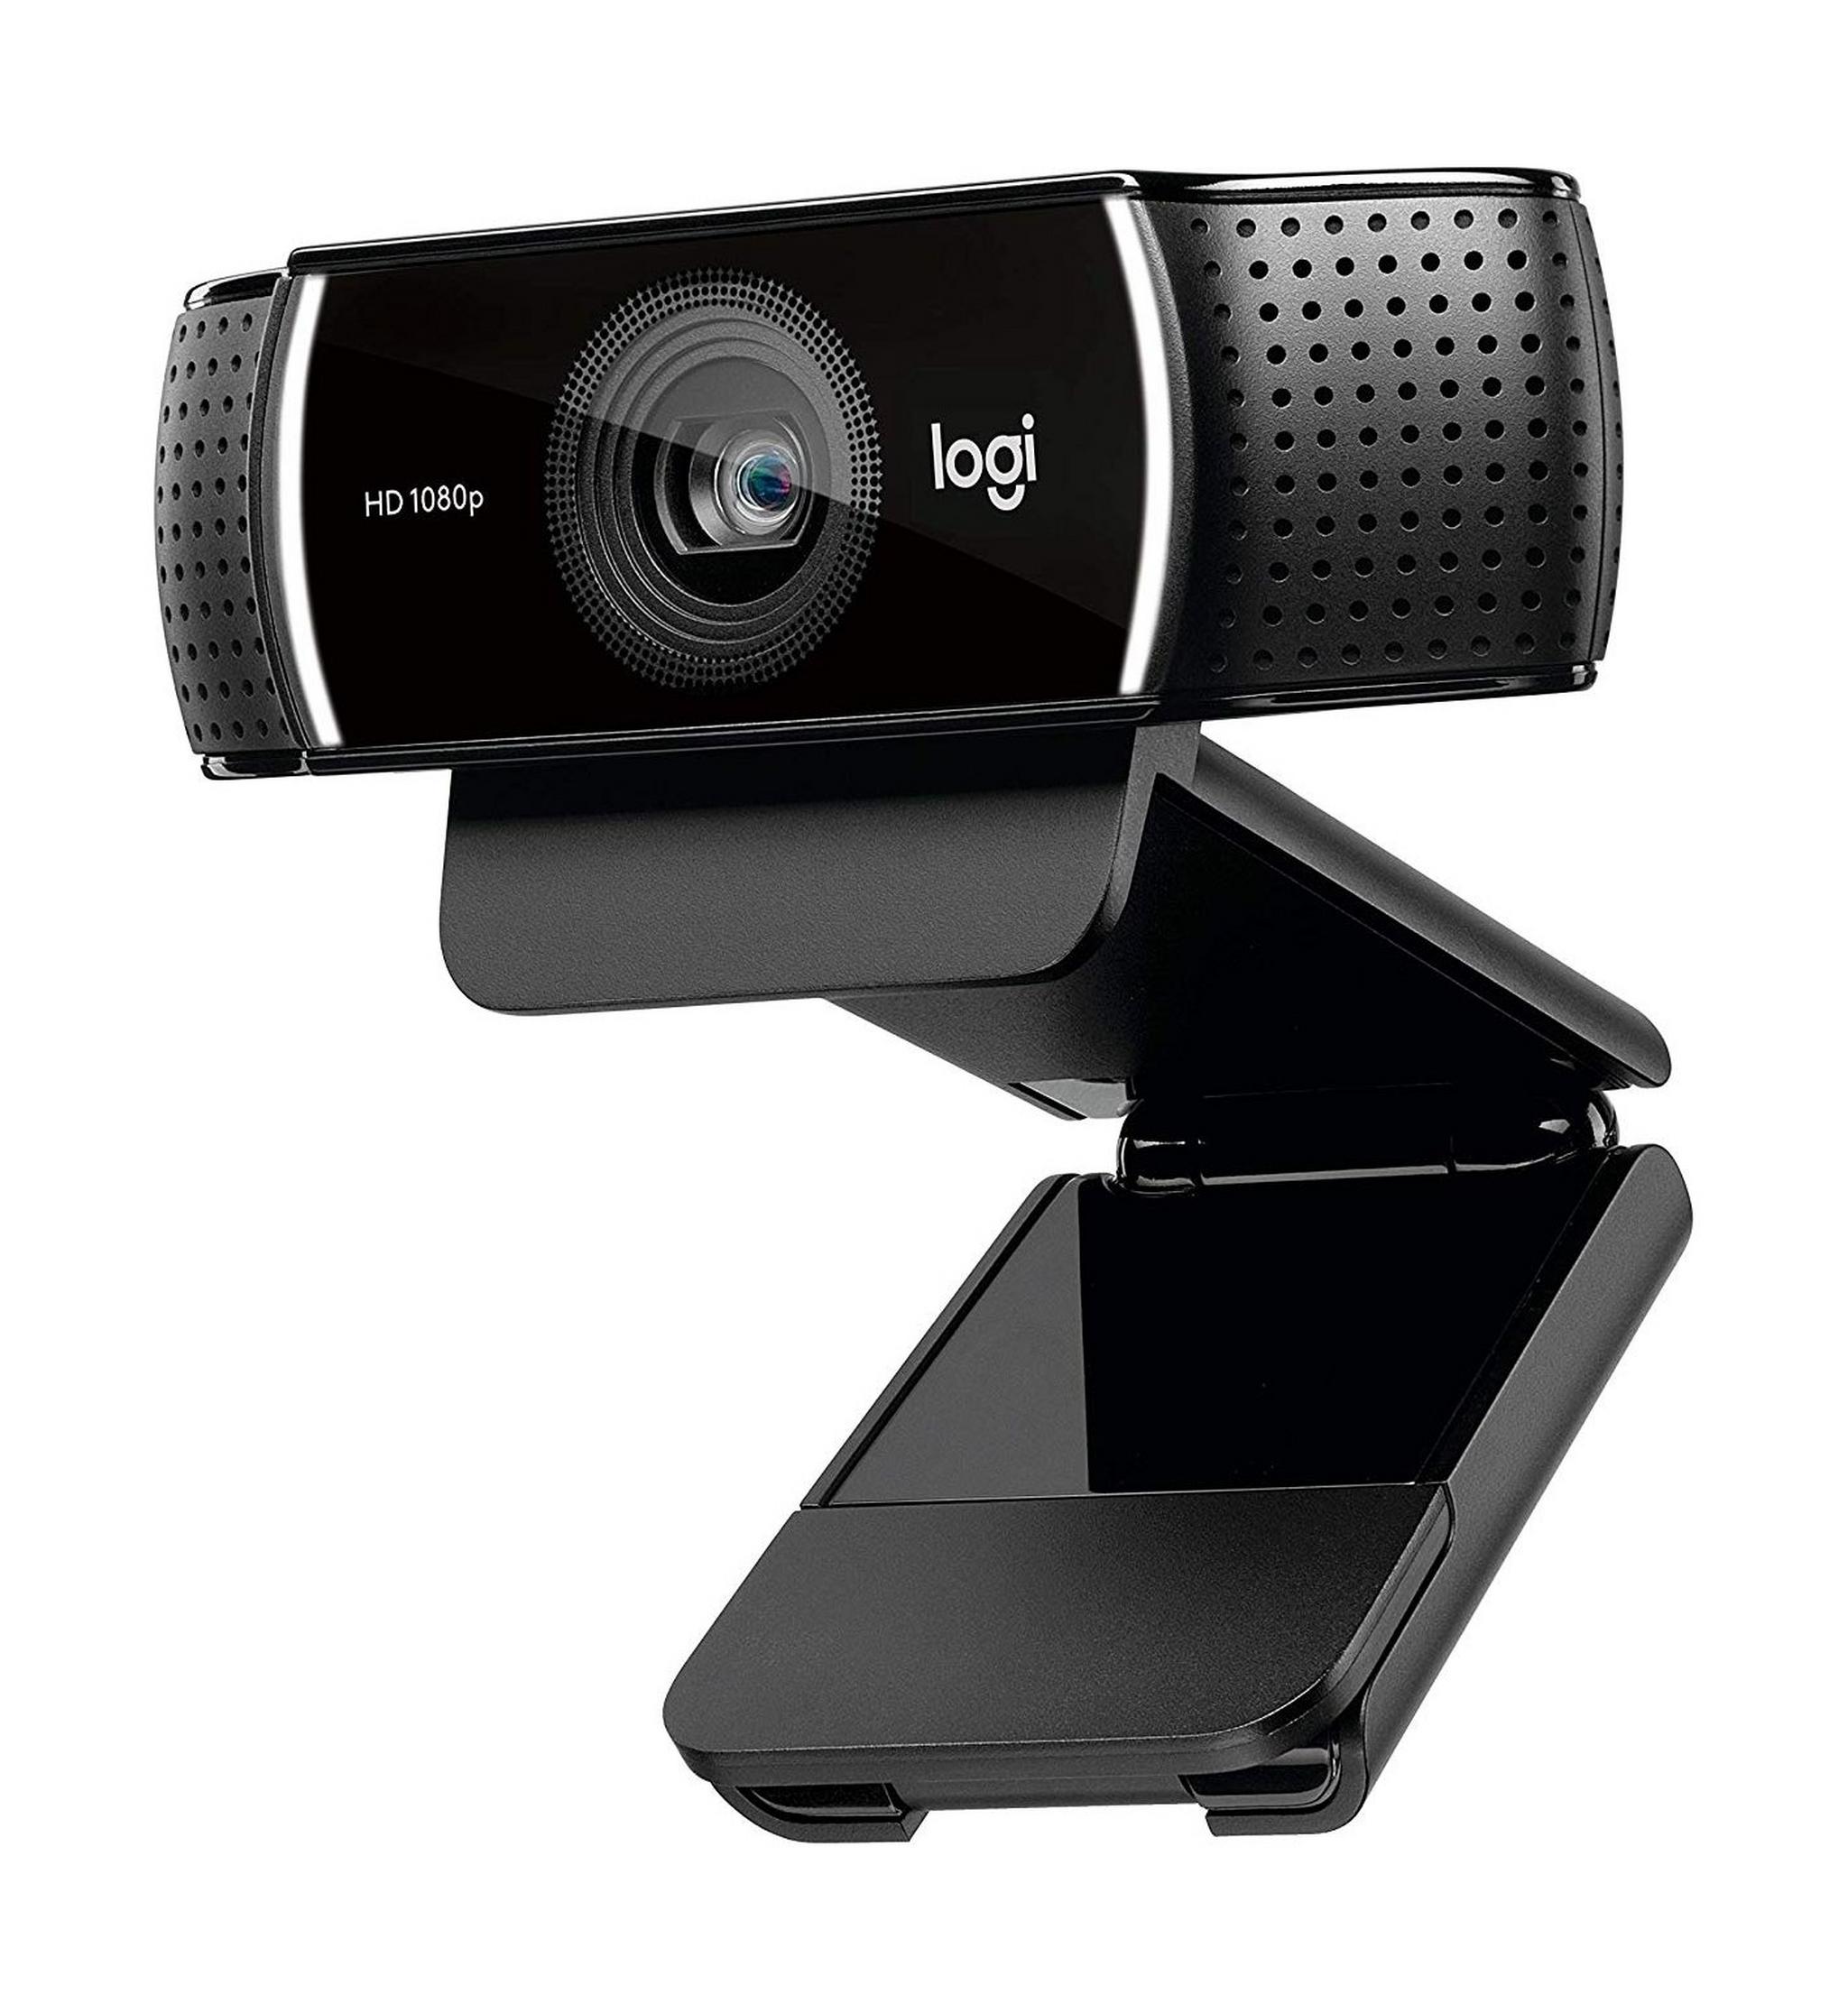 كاميرا الويب يو إس بي لوجيتك سي ٩٢٢ برو ستريم - أسود (960-001088)